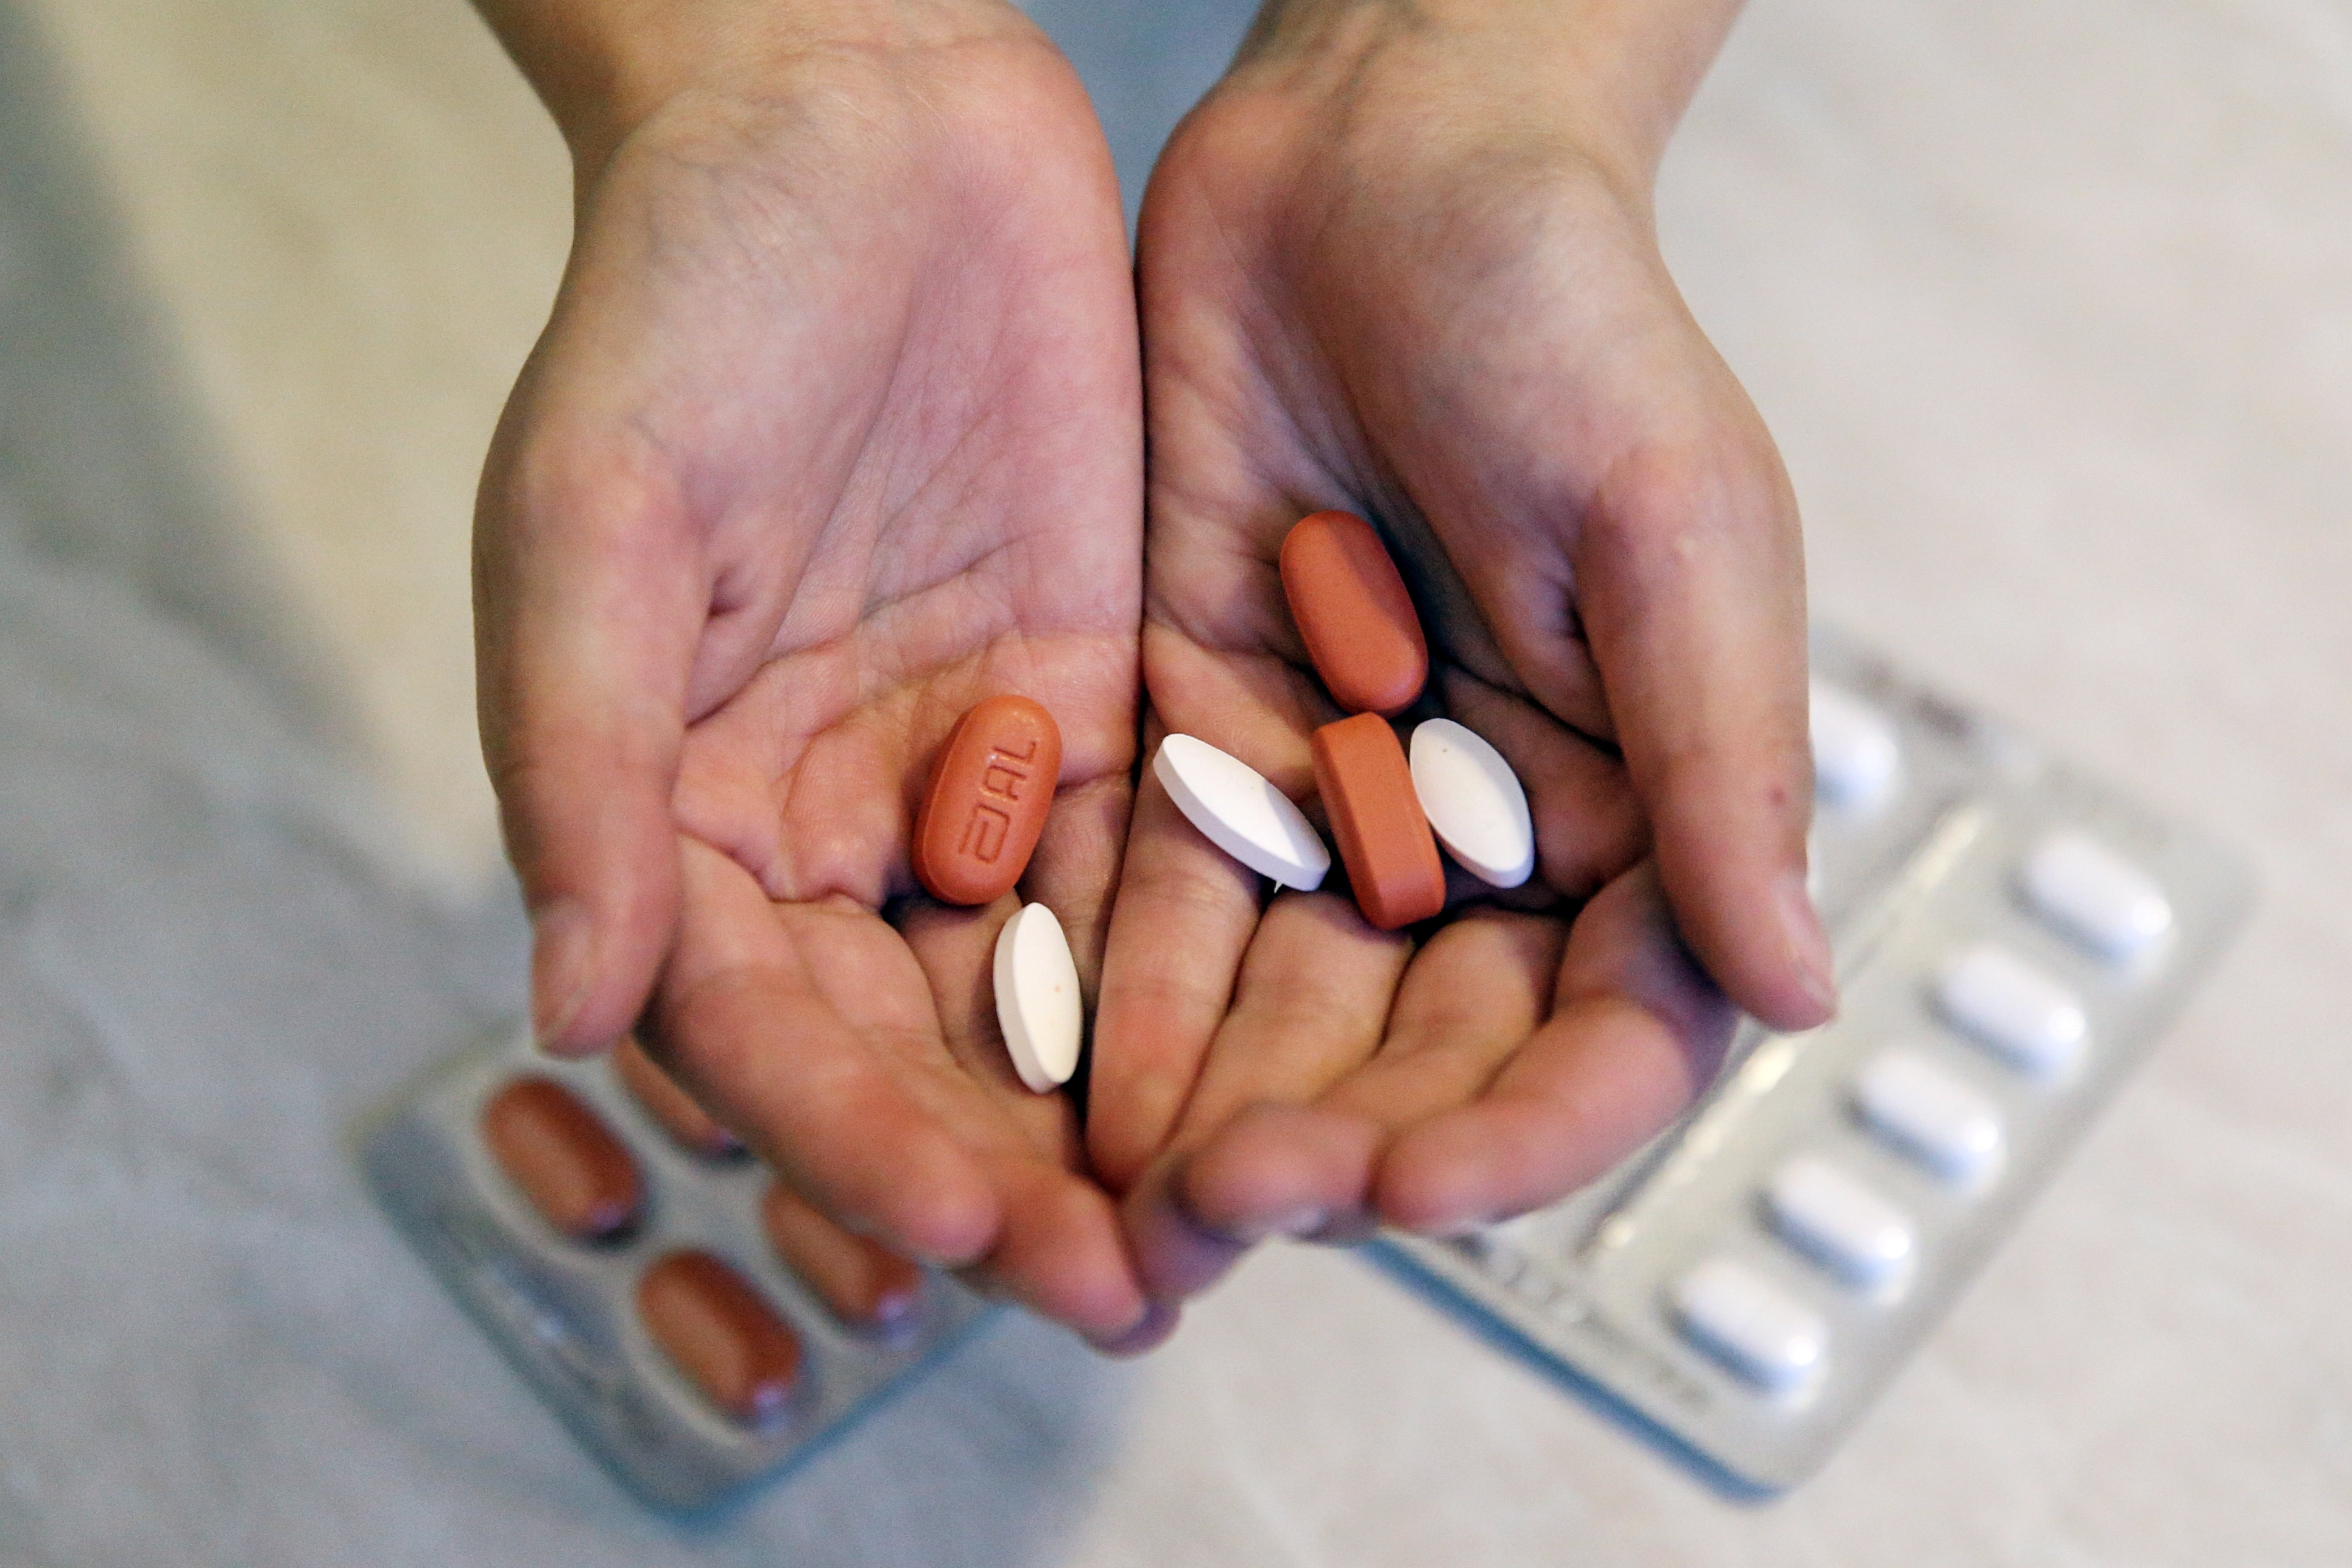 Россию ждет скачок смертности от онкологических заболеваний в 20-30 процентов, если в стране не изменятся правила закупки лекарств